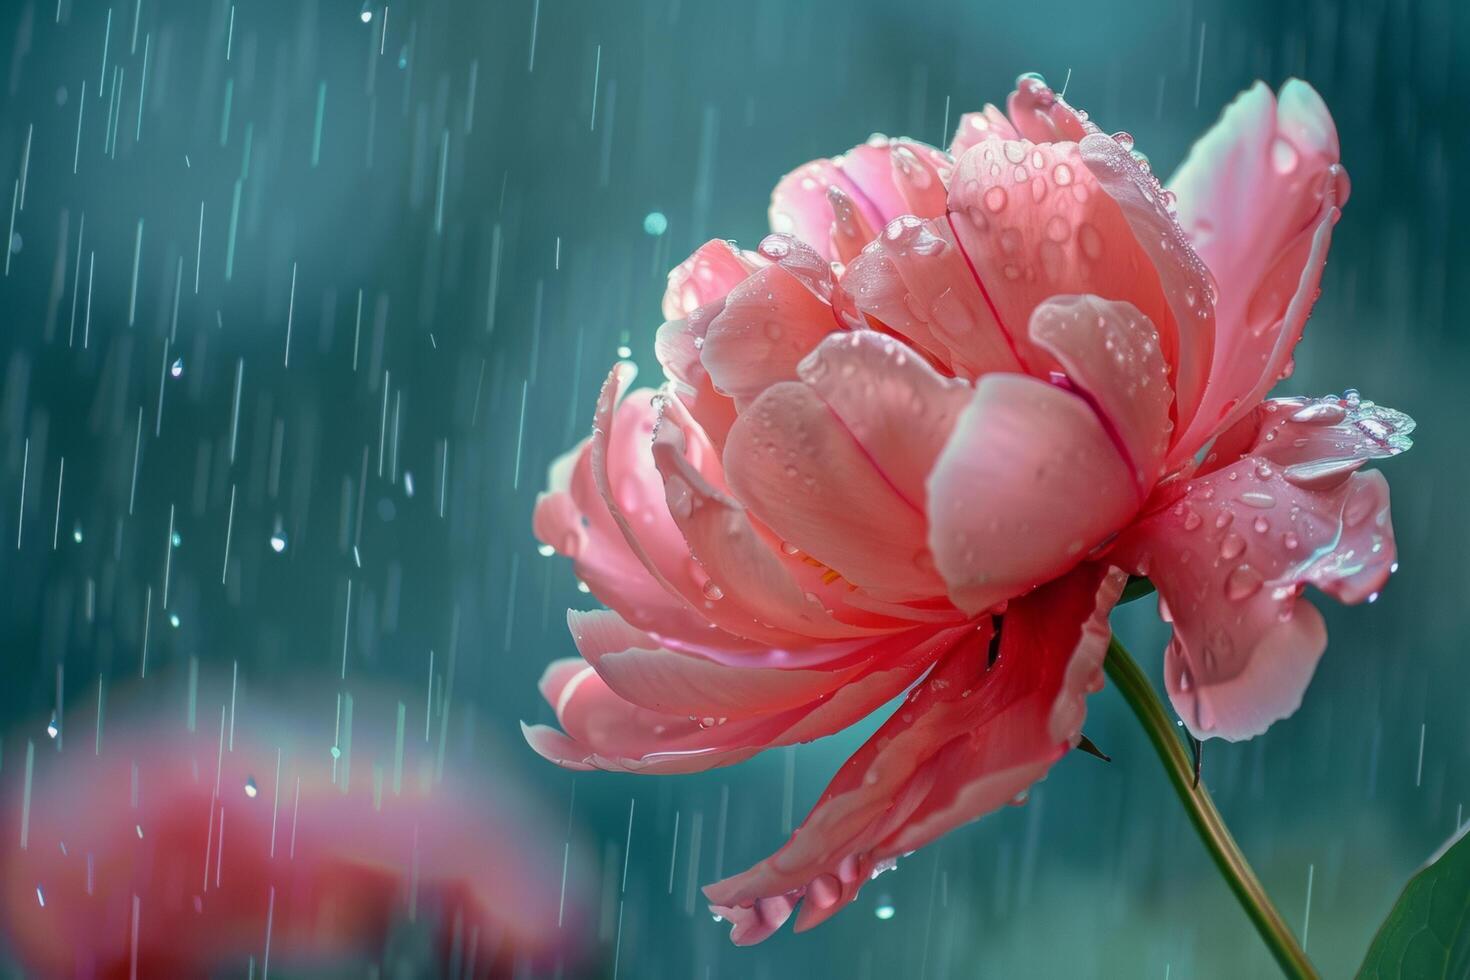 AI generated Raindrops on Vibrant Peony Petals photo